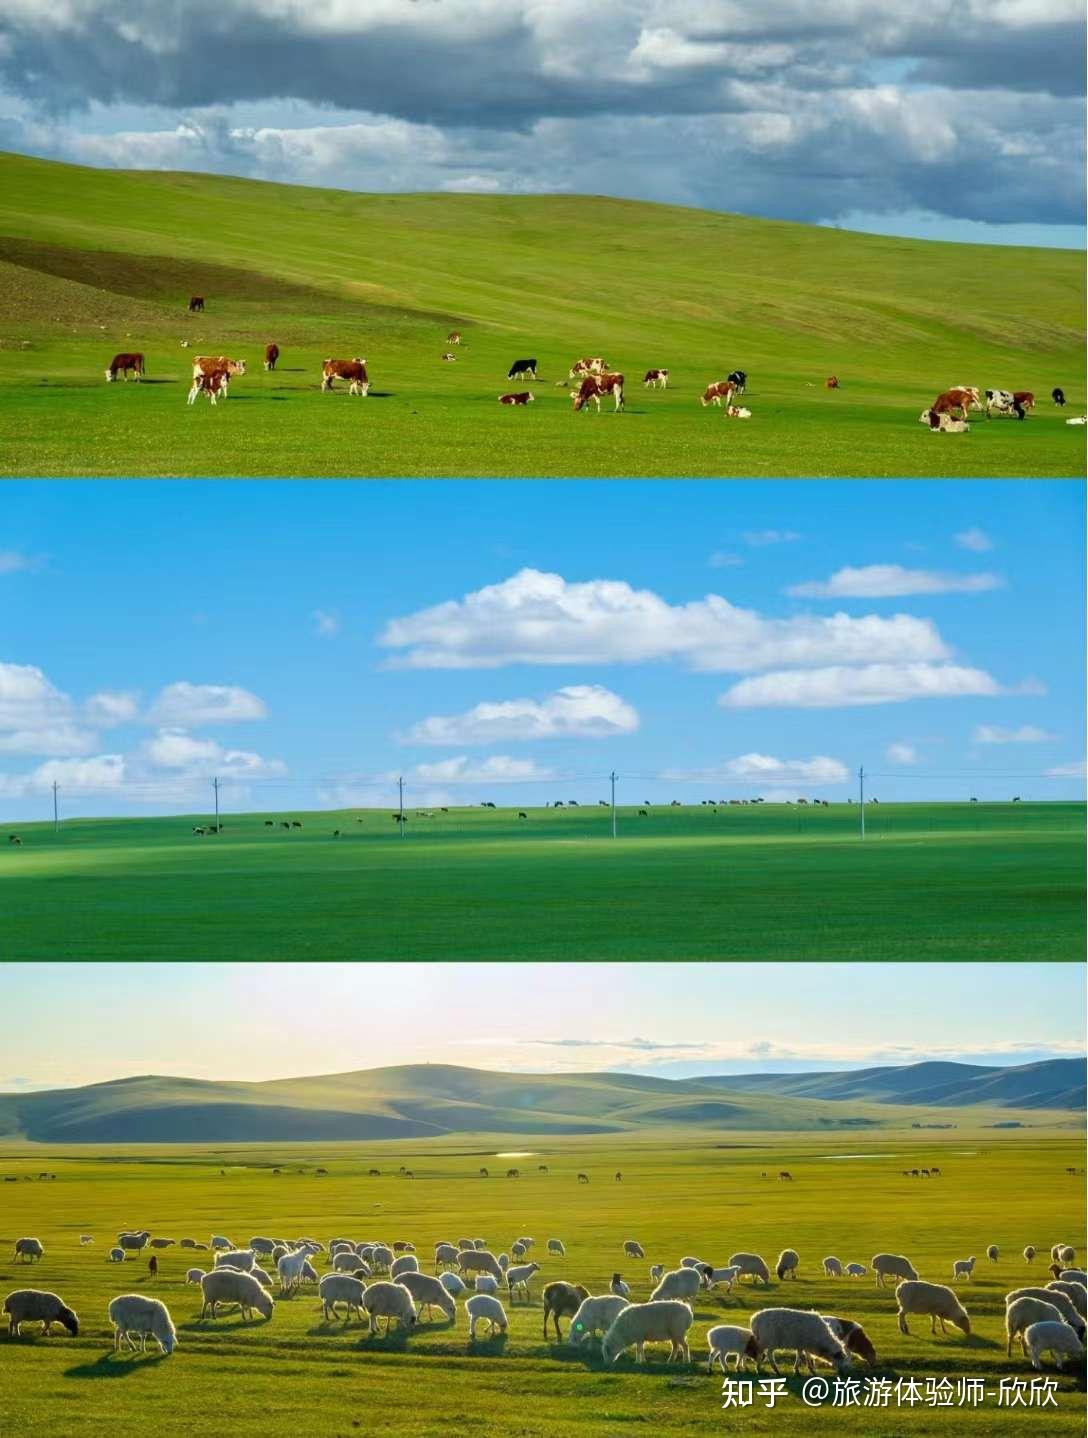 内蒙古蒙语文化卫视2图片